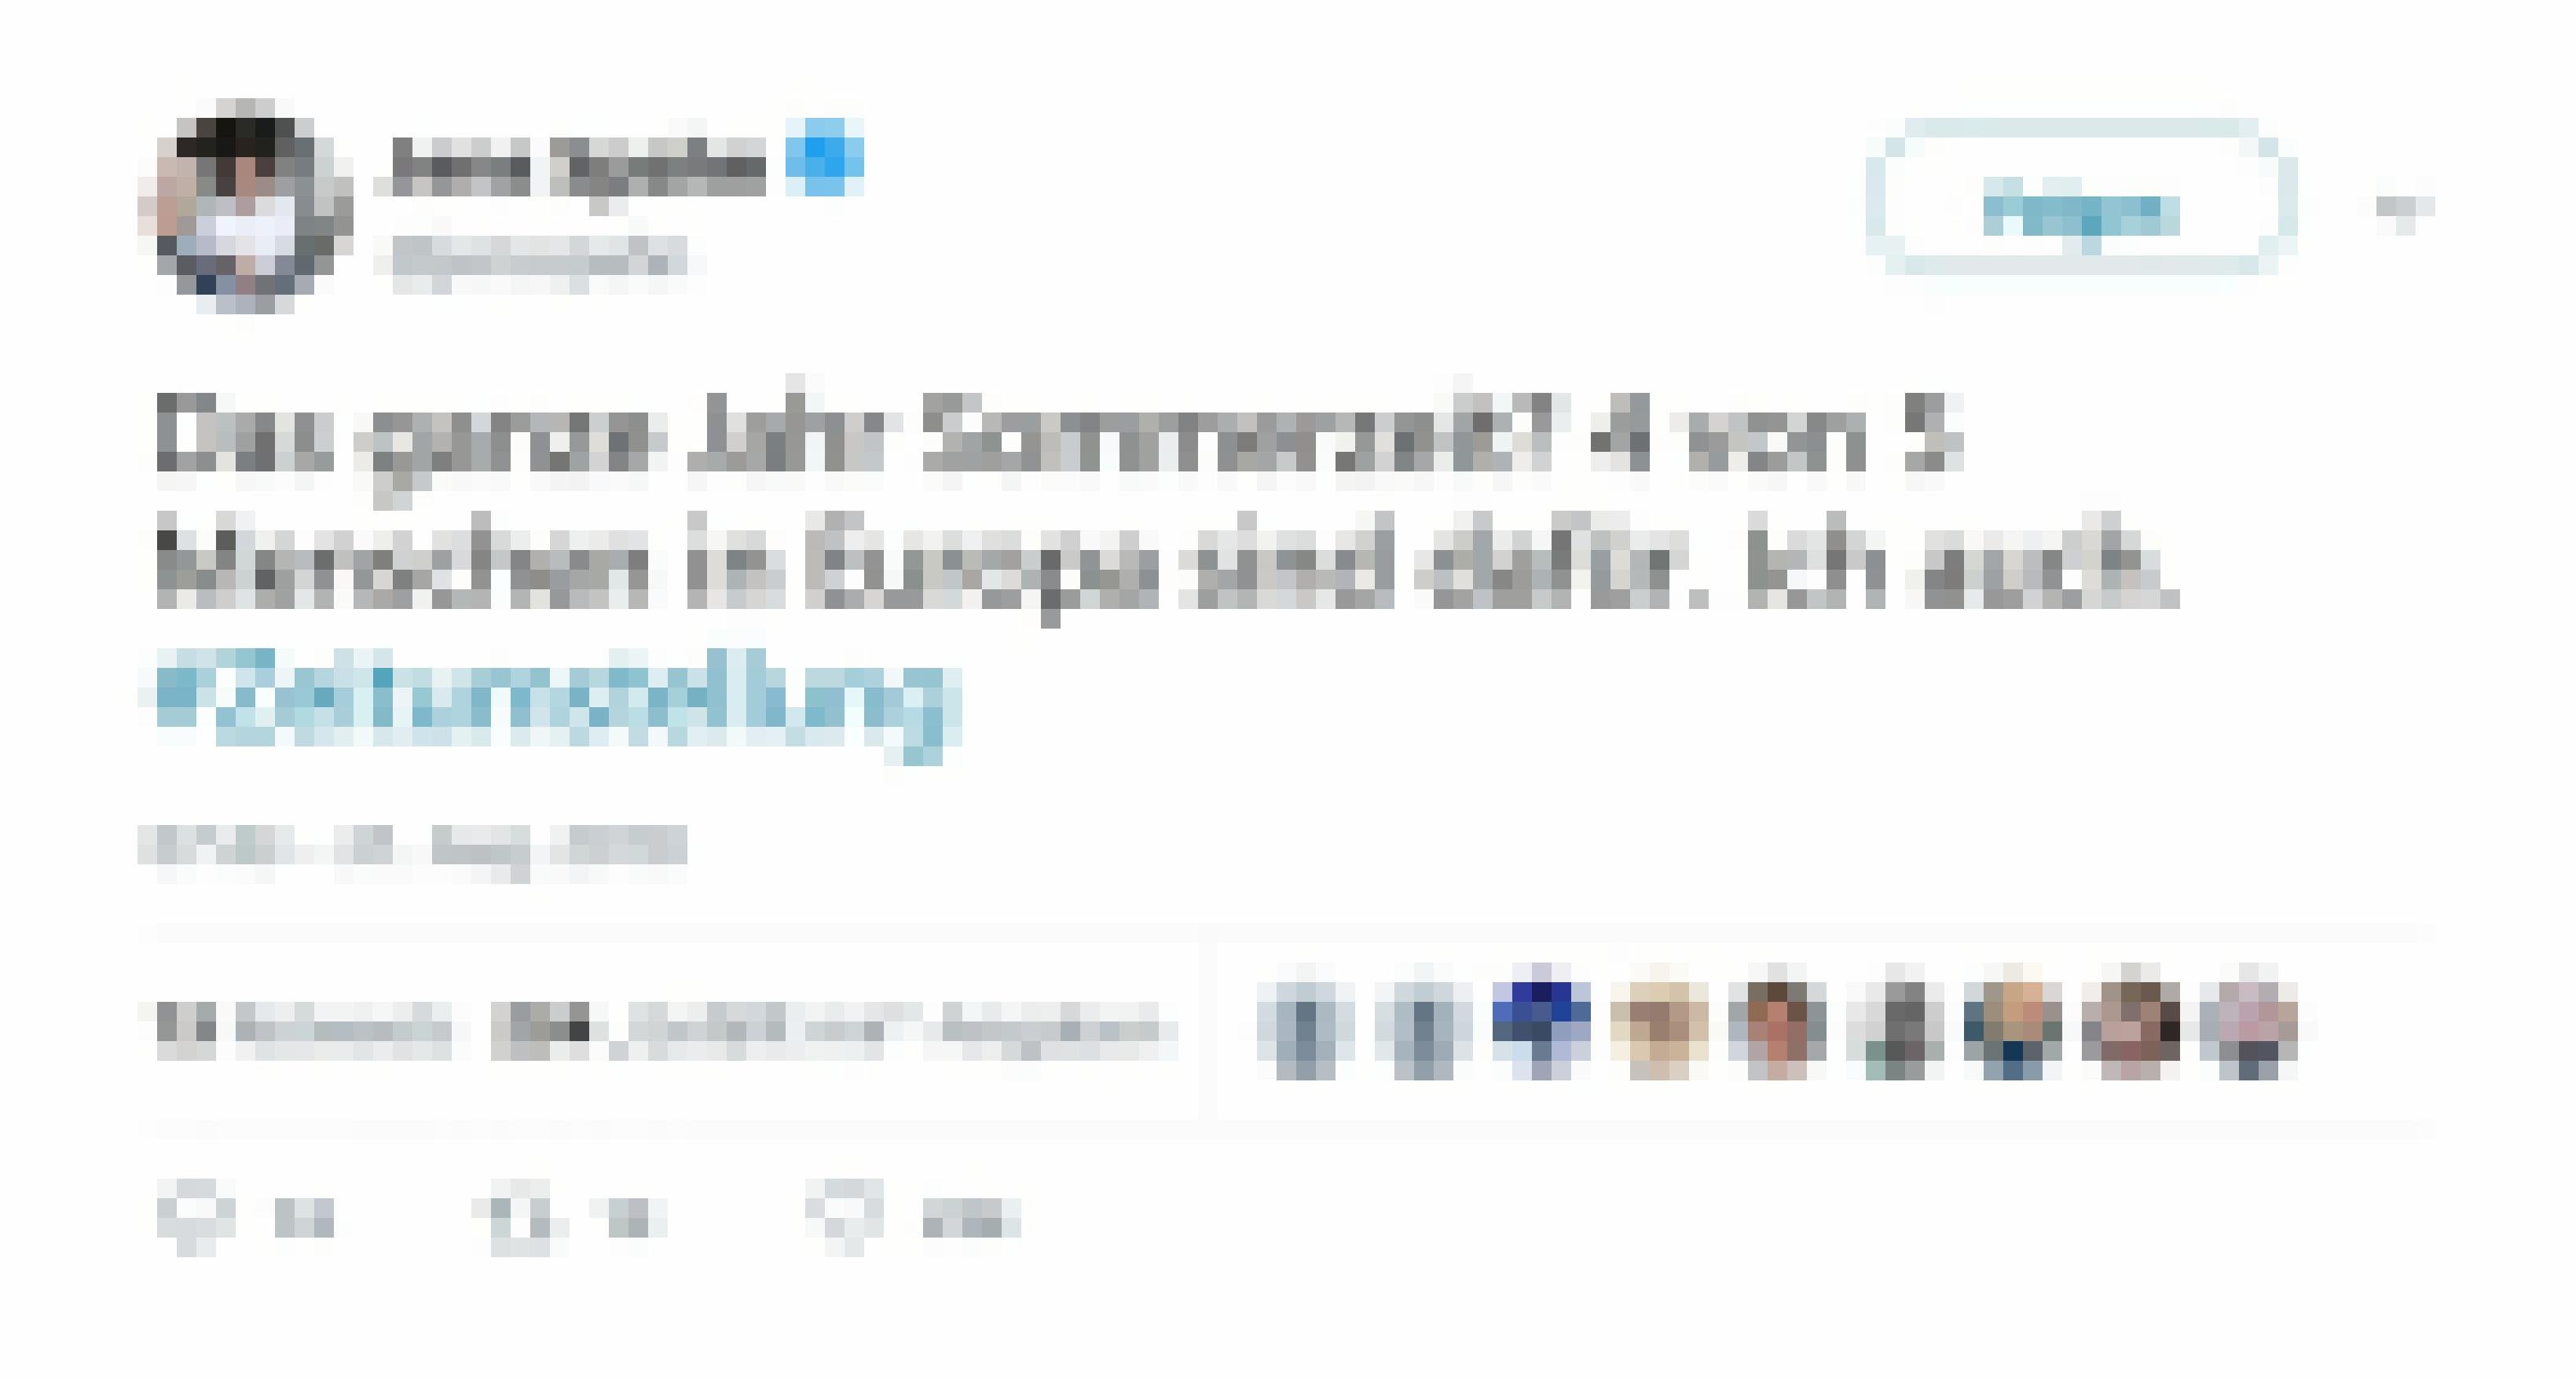 Tweet von Jens Spahn: Das ganze Jahr Sommerzeit? 4 von 5 Menschen in Europa sind dafür. ich auch!